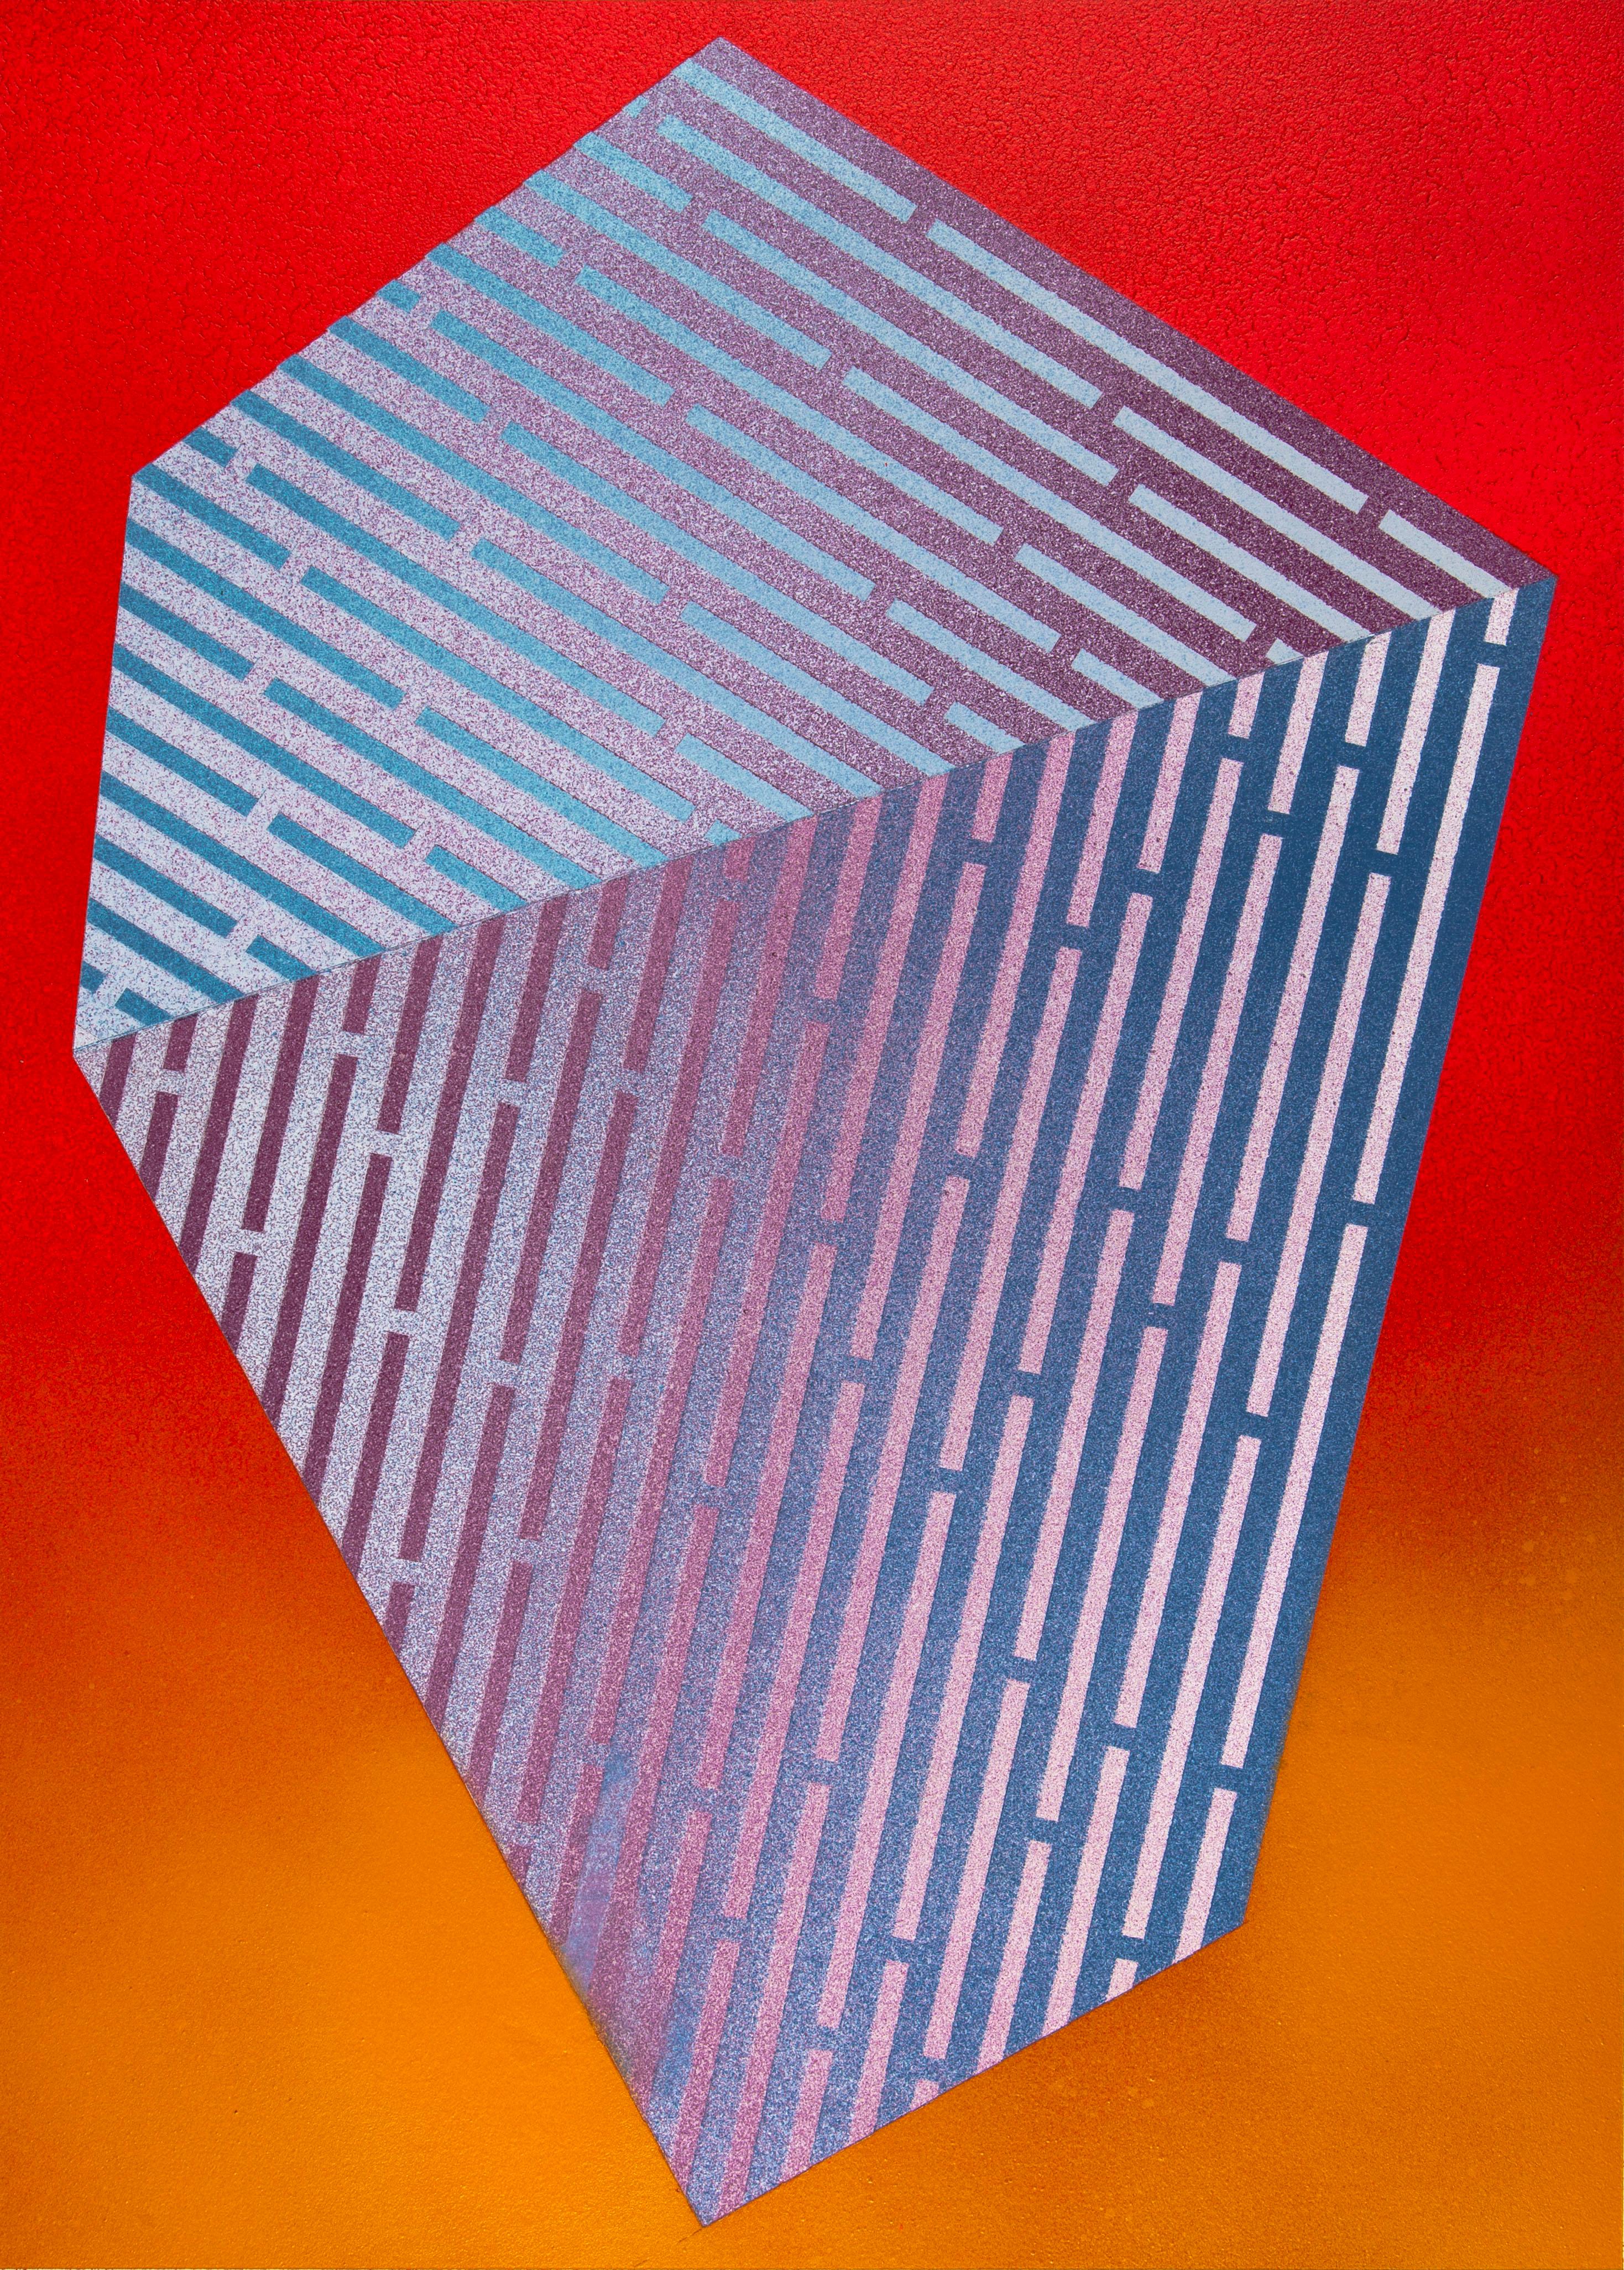 Polygone luminescent XII : peinture géométrique abstraite ; motifs de lignes rouges et violettes